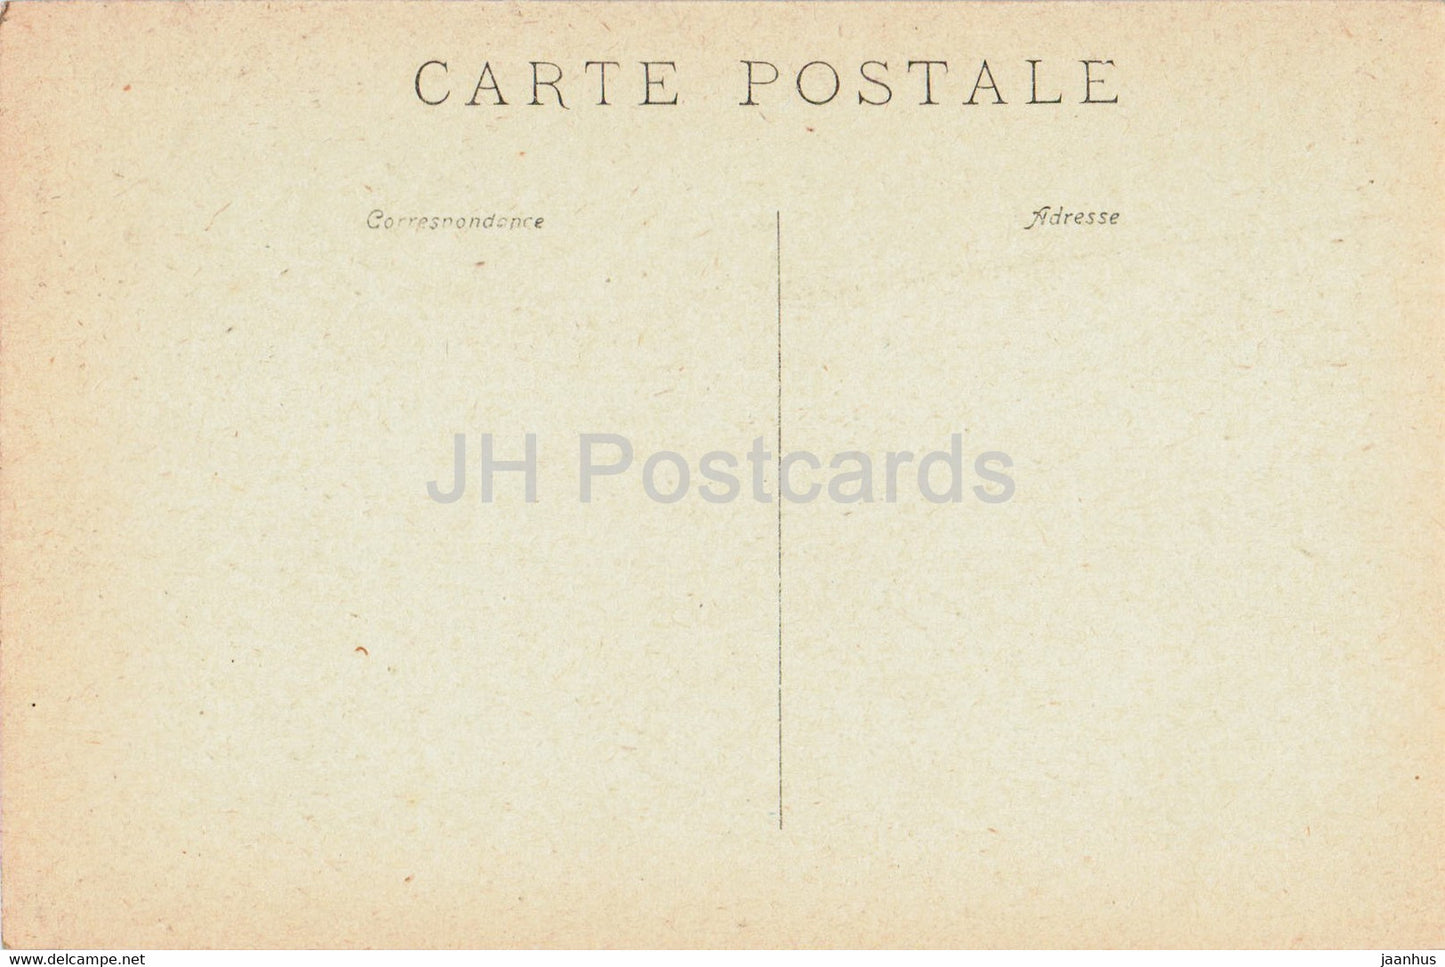 Chapelle de la Mine - carte postale ancienne - France - inutilisée